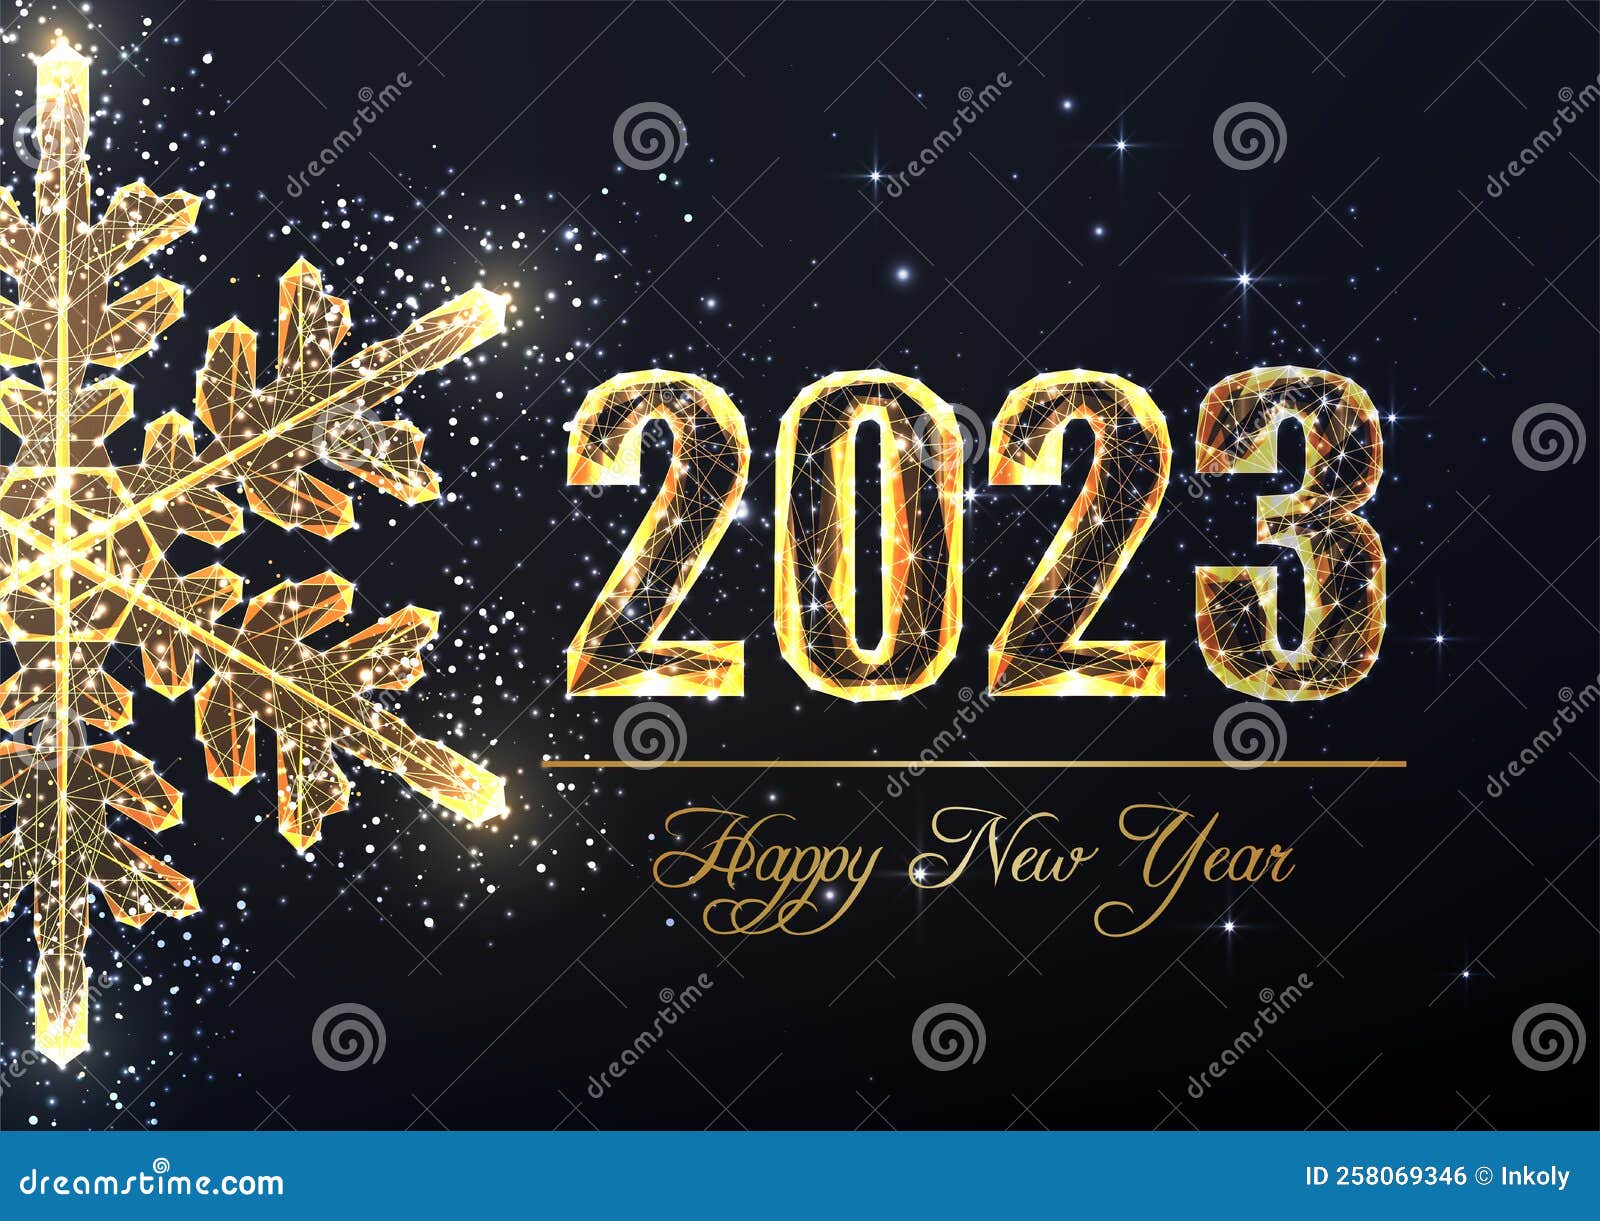 Chào đón năm mới 2024 với hạnh phúc và niềm vui đong đầy. Nhấp vào hình ảnh để cùng chúng tôi cảm nhận tiếng chúc mừng năm mới đầy đặn và đầy ý nghĩa.